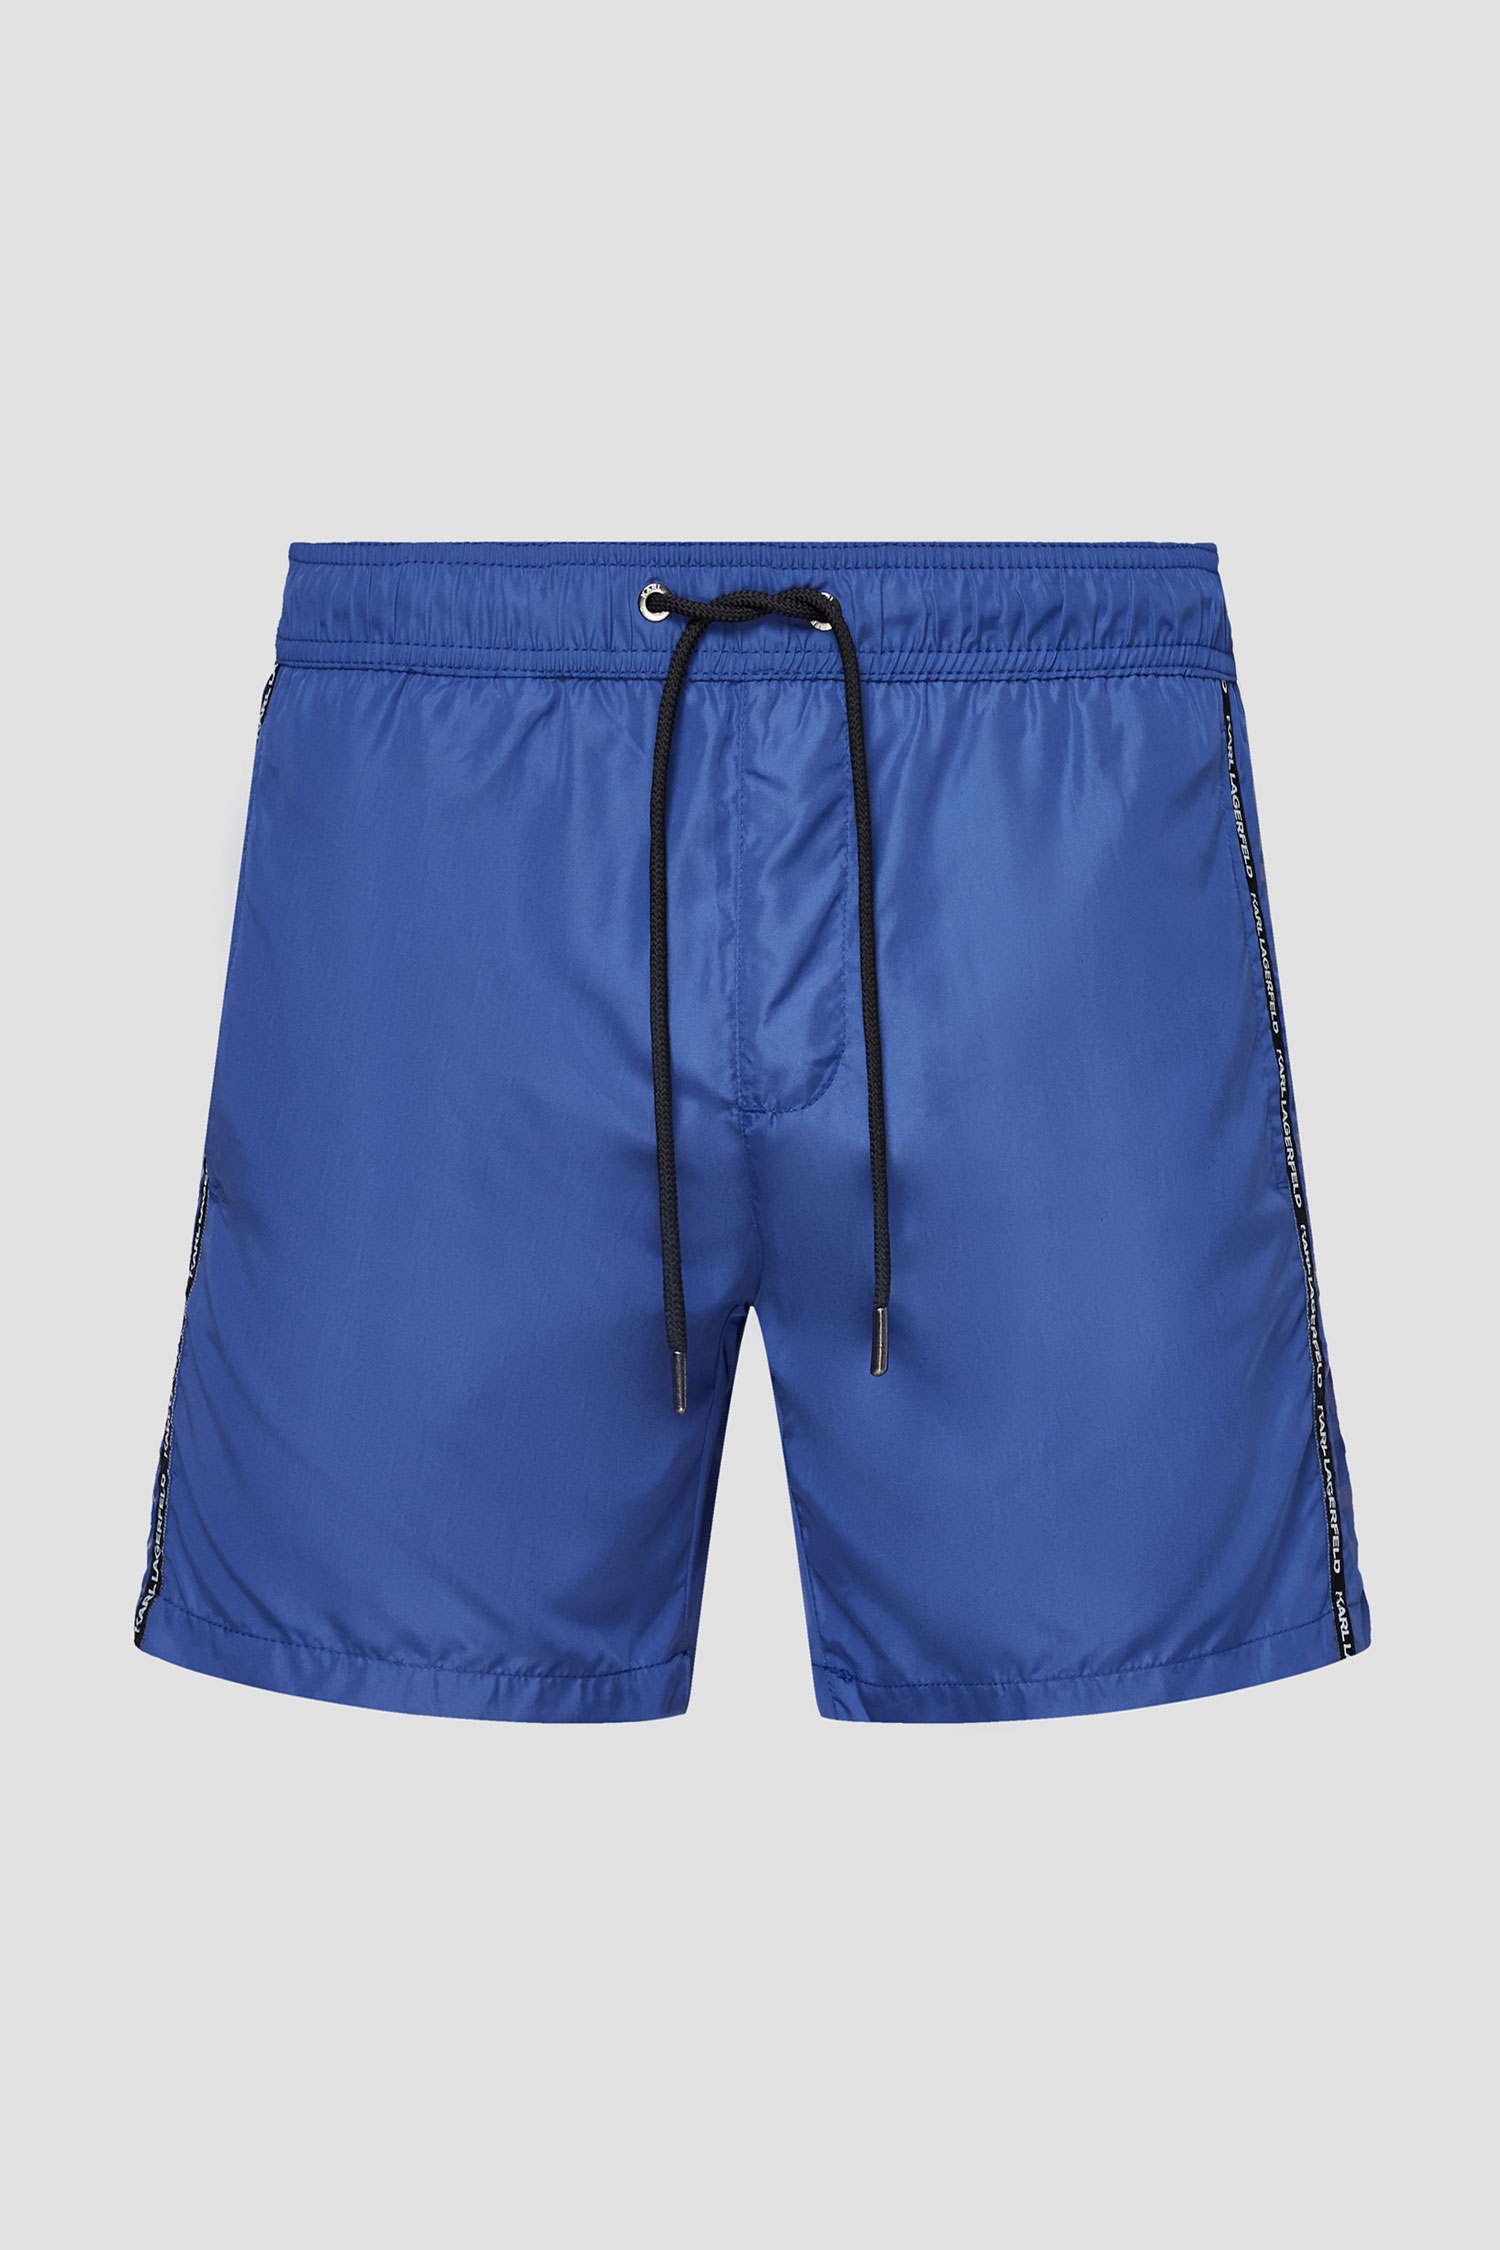 Мужские синие плавательные шорты Karl Lagerfeld KL21MBM03;NAVY